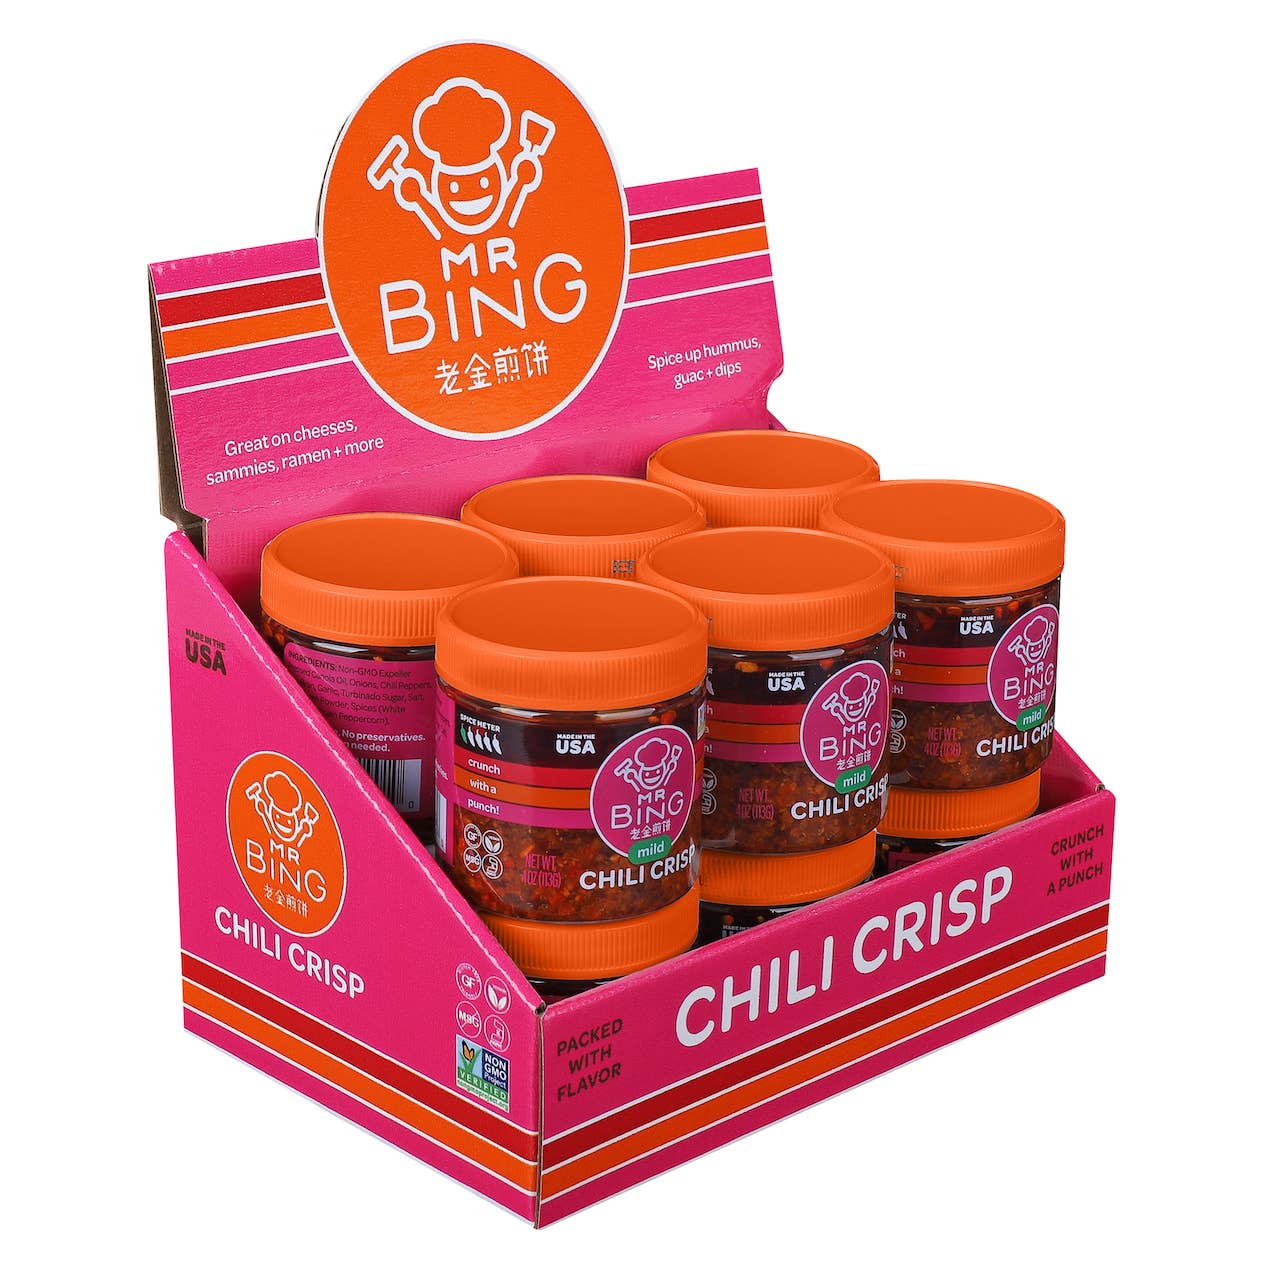 Mr Bing Mild Chili Crisp, 4 oz